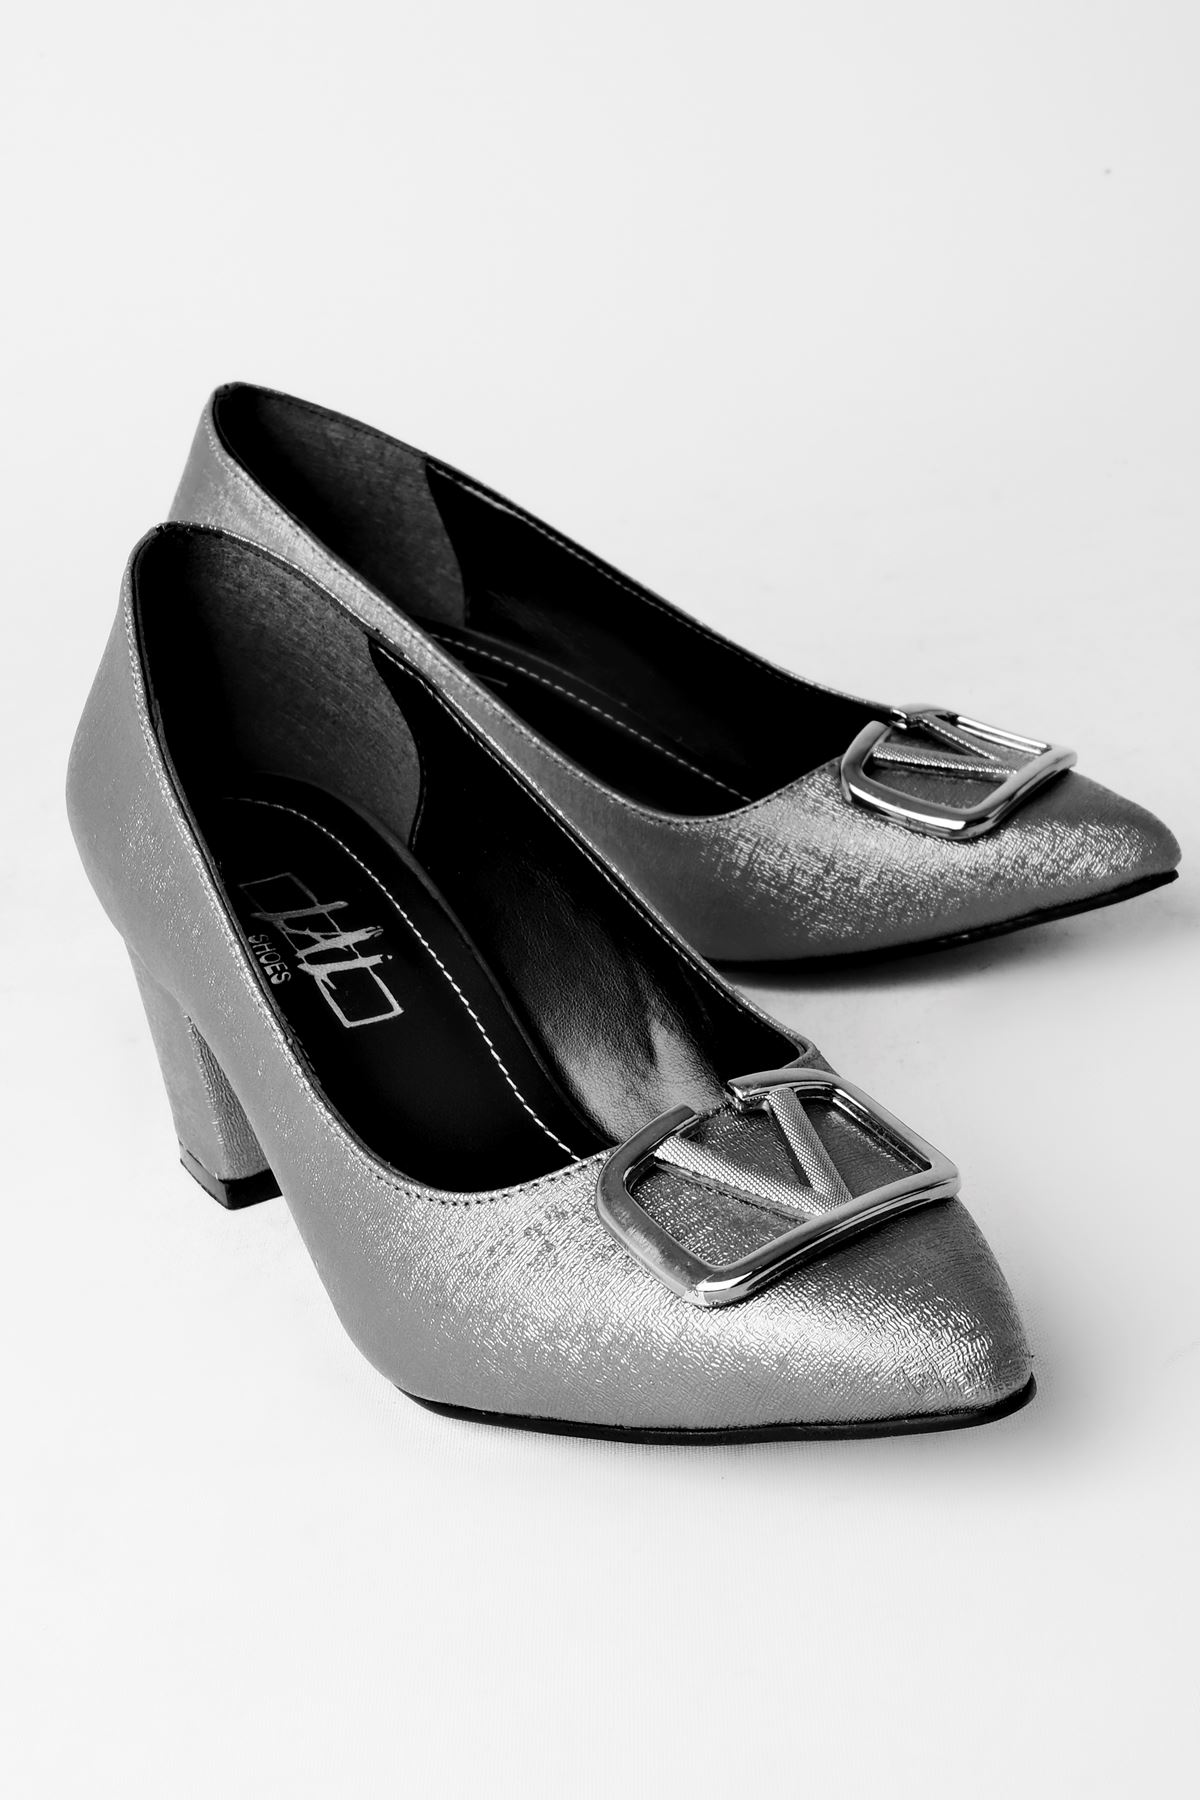 Daisy Kadın Topuklu Ayakkabı Metal V Detaylı-Gri